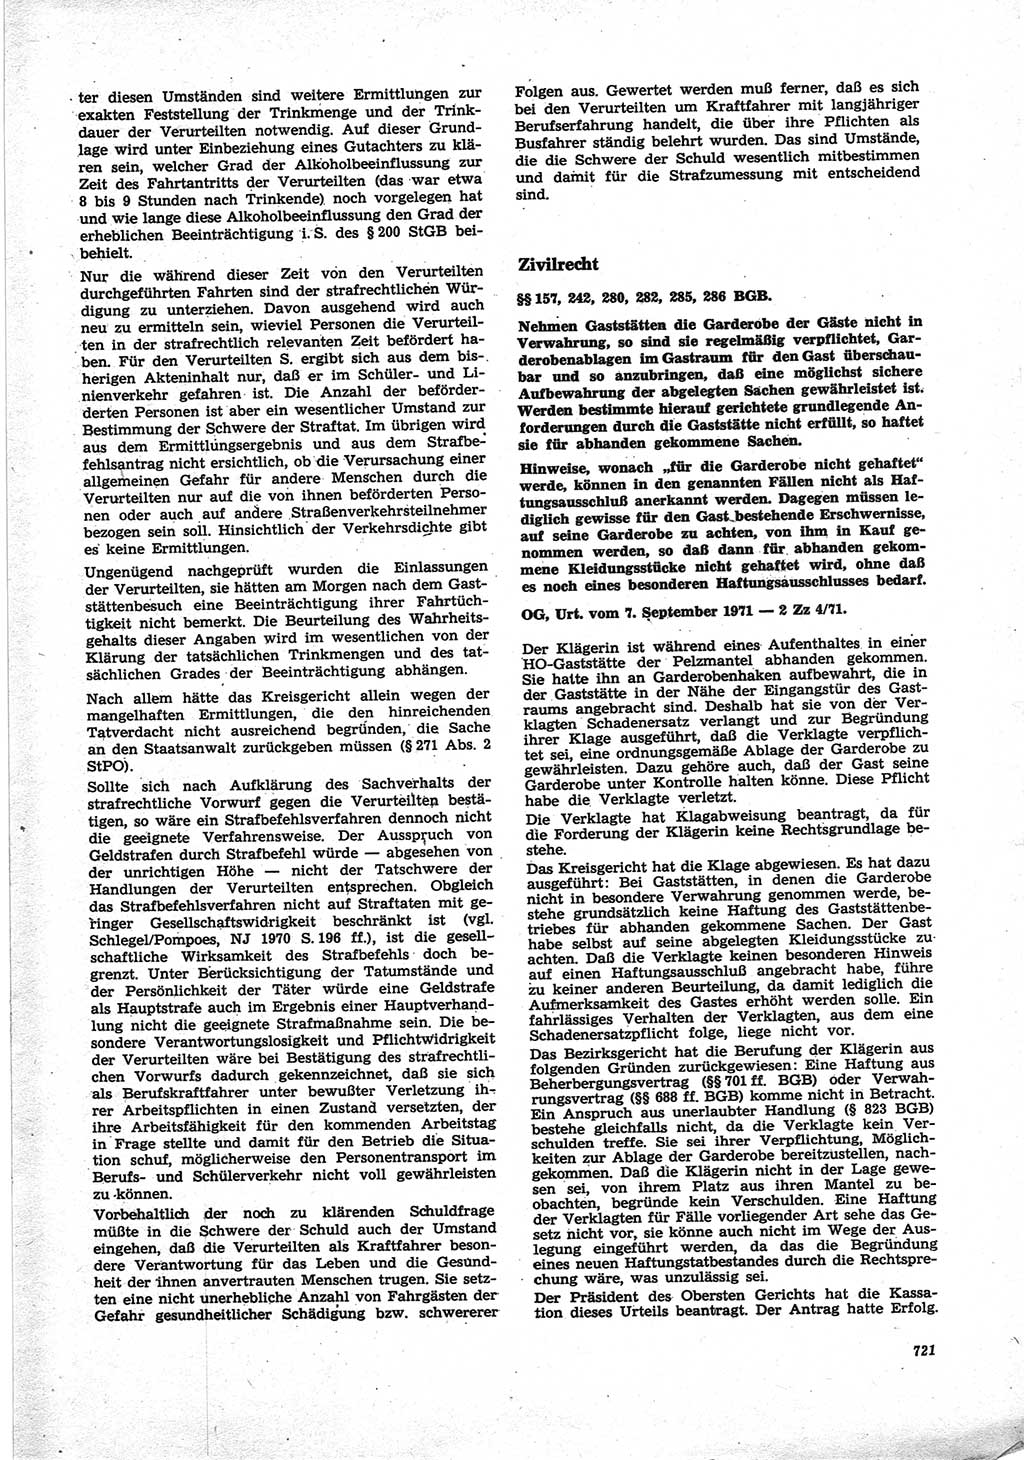 Neue Justiz (NJ), Zeitschrift für Recht und Rechtswissenschaft [Deutsche Demokratische Republik (DDR)], 25. Jahrgang 1971, Seite 721 (NJ DDR 1971, S. 721)